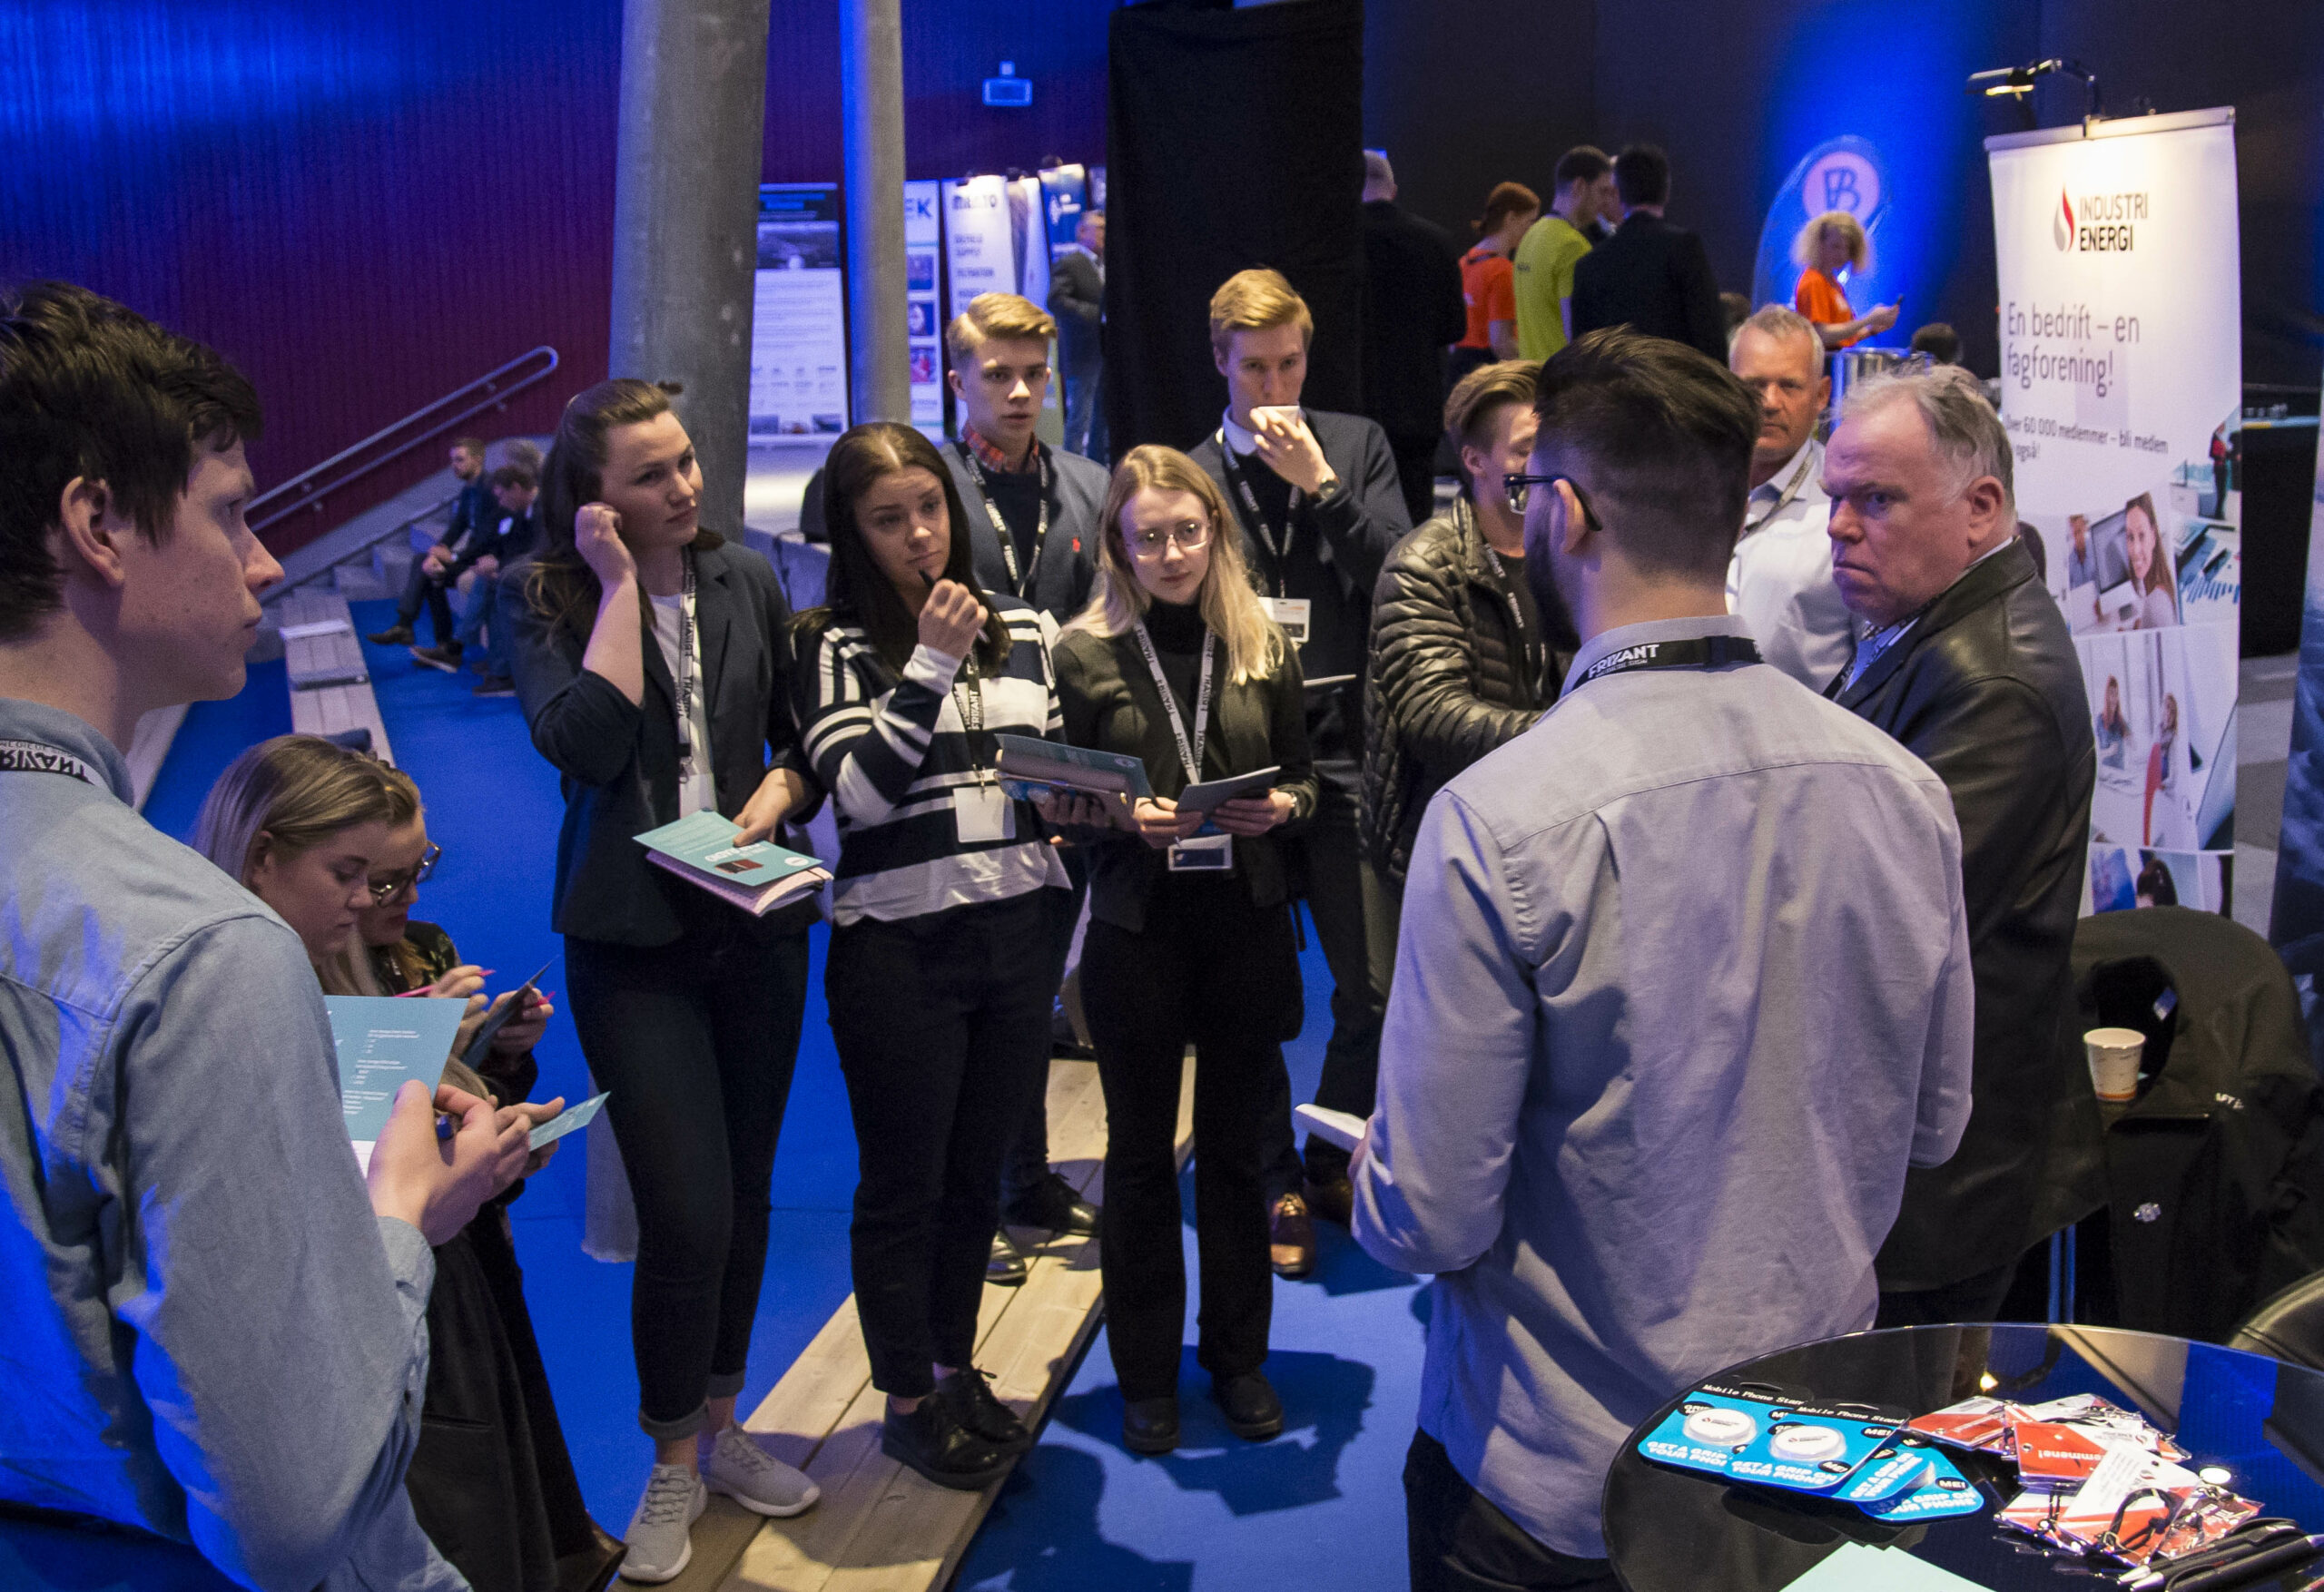 Industri Energis stand på Barentshavkonferansen blir godt besøkt, særlig av studenter. Foto: Atle Espen Helgesen